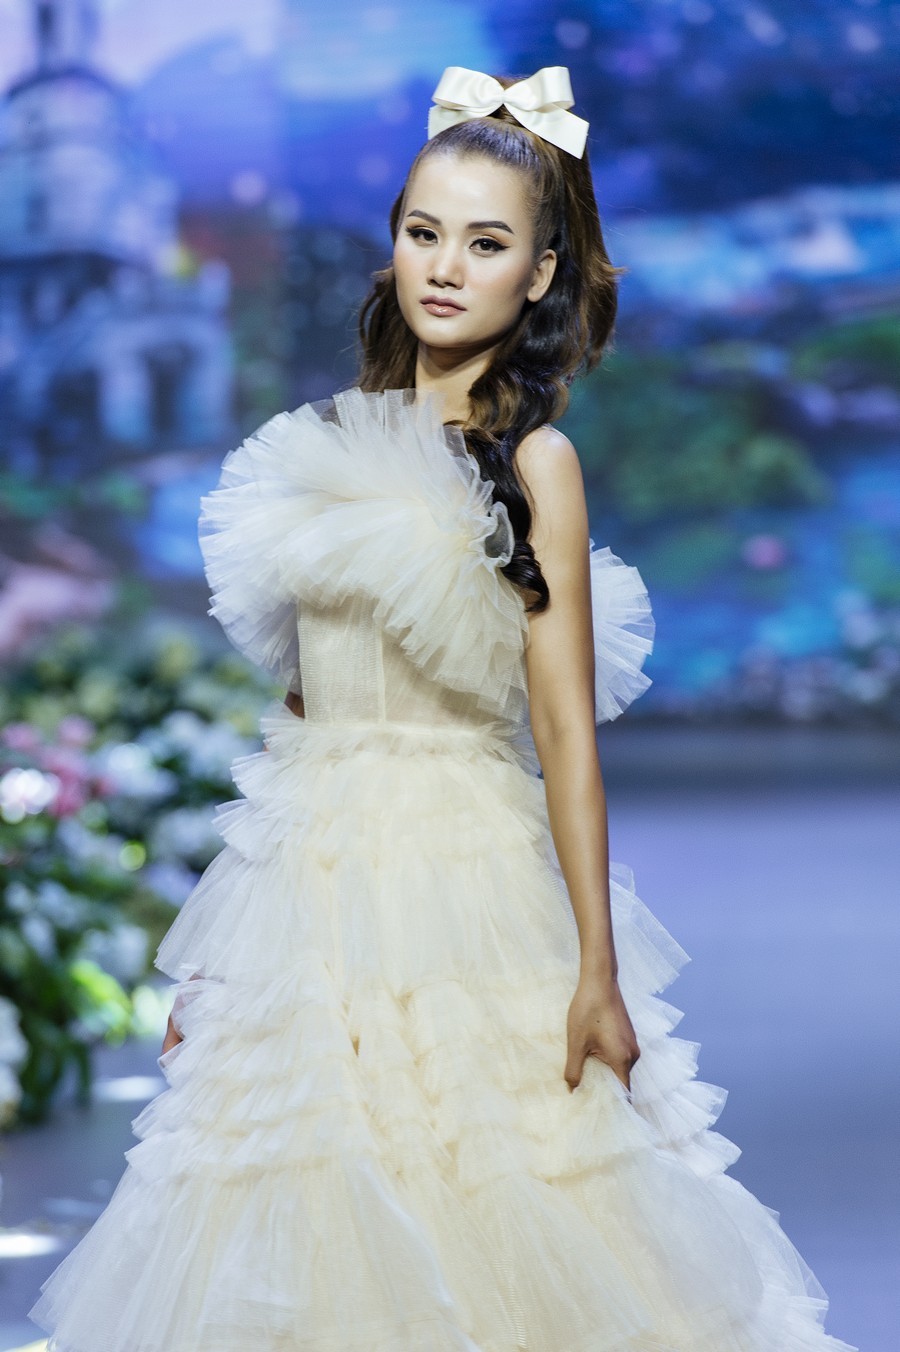  
Hương Ly nhận được nhiều lời khen khi vừa bước ra từ nghề mẫu vừa là top 5 người đẹp xuất sắc nhất tại Hoa hậu Hoàn vũ Việt Nam 2019.